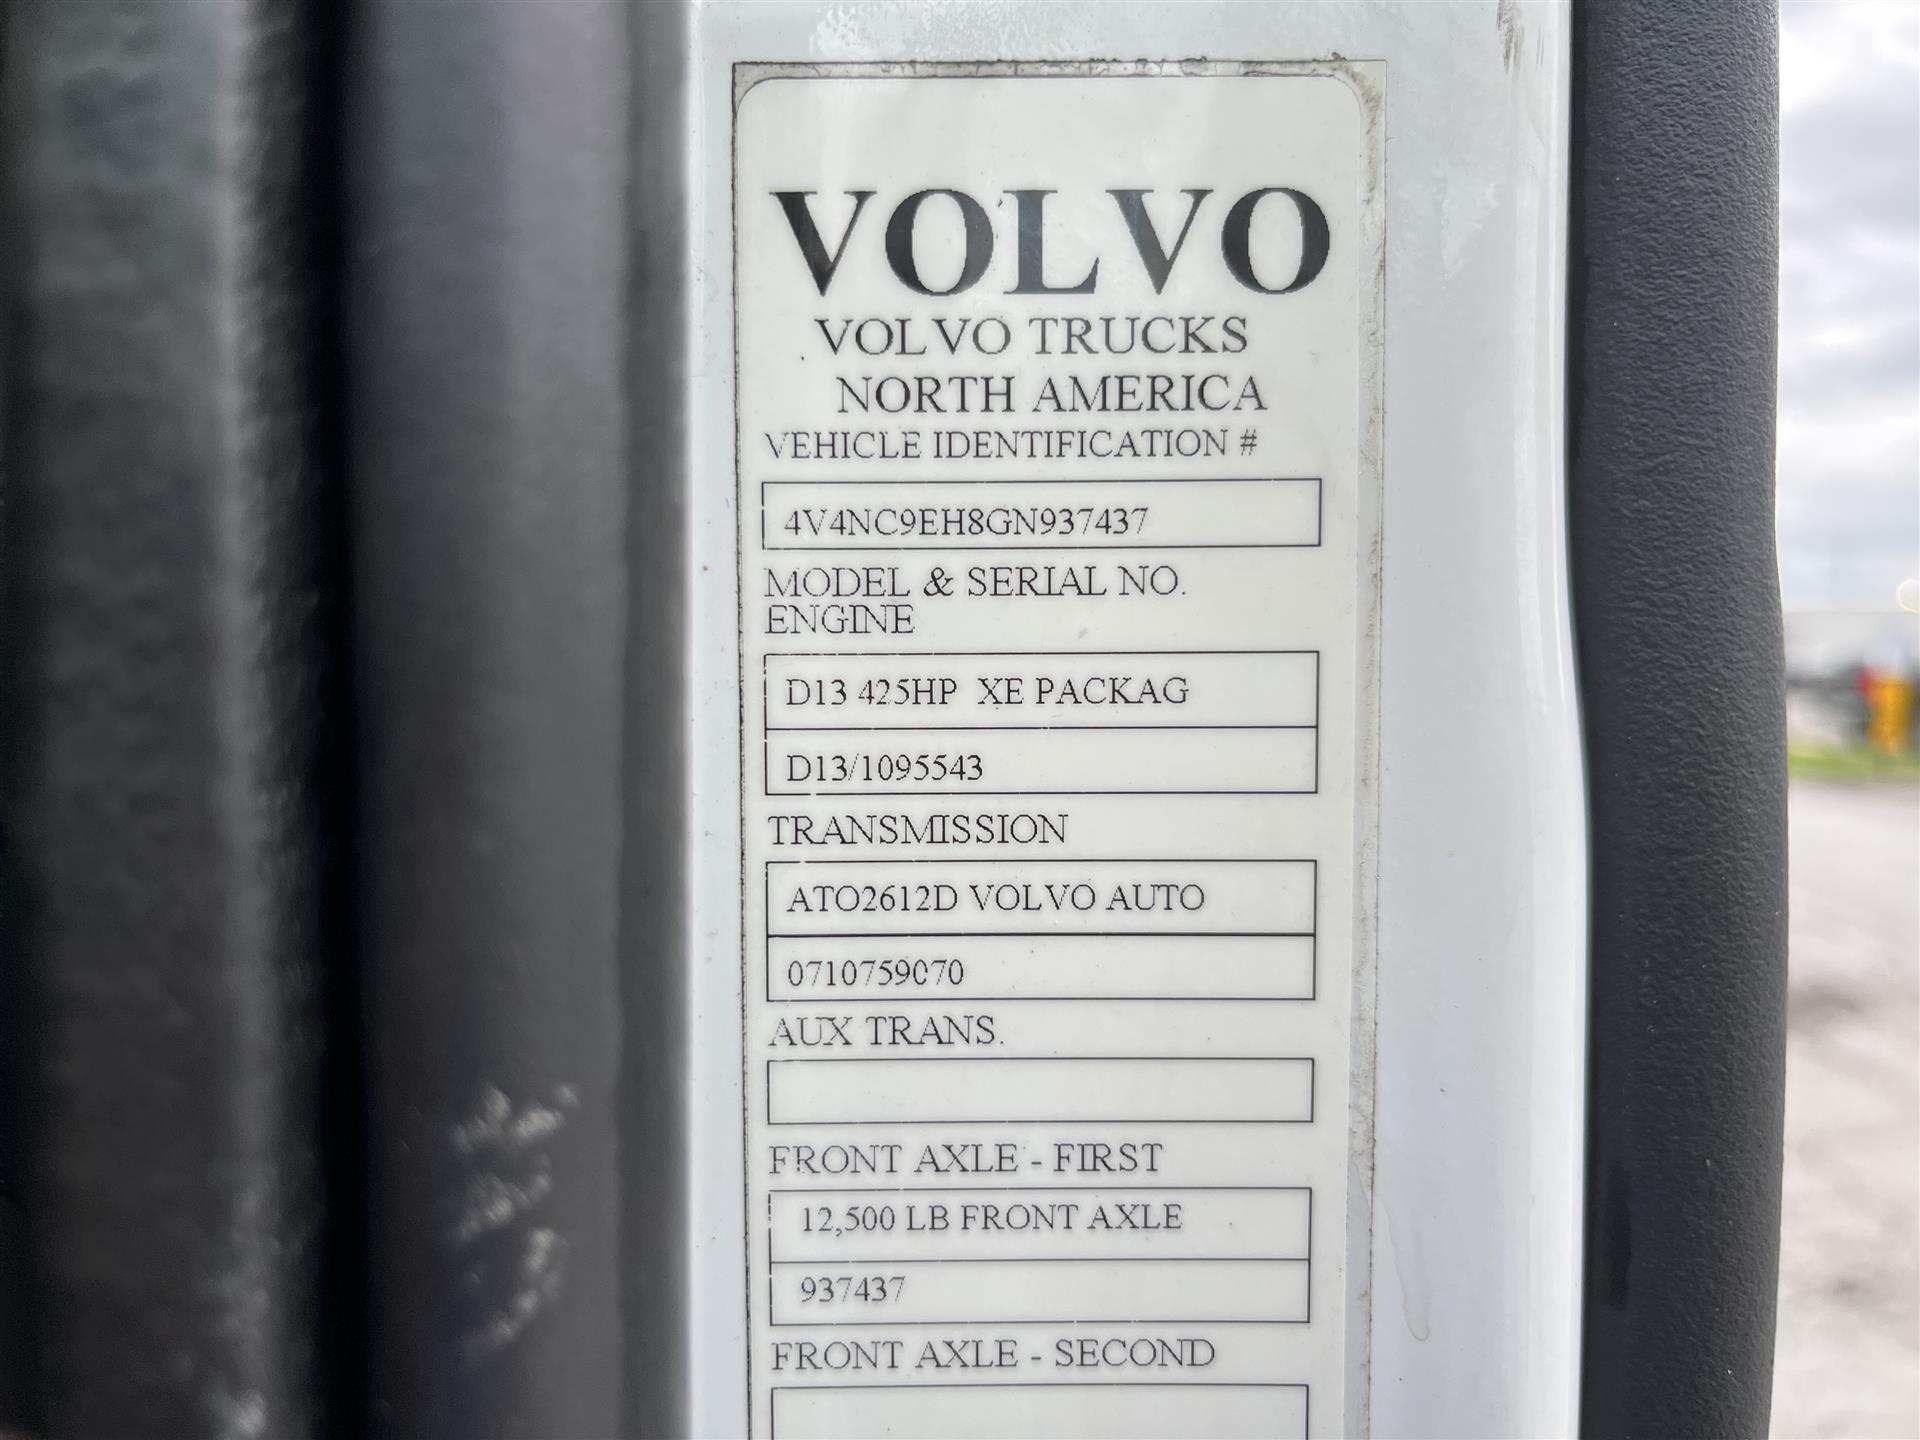 2016 Volvo VNL670 – 937437